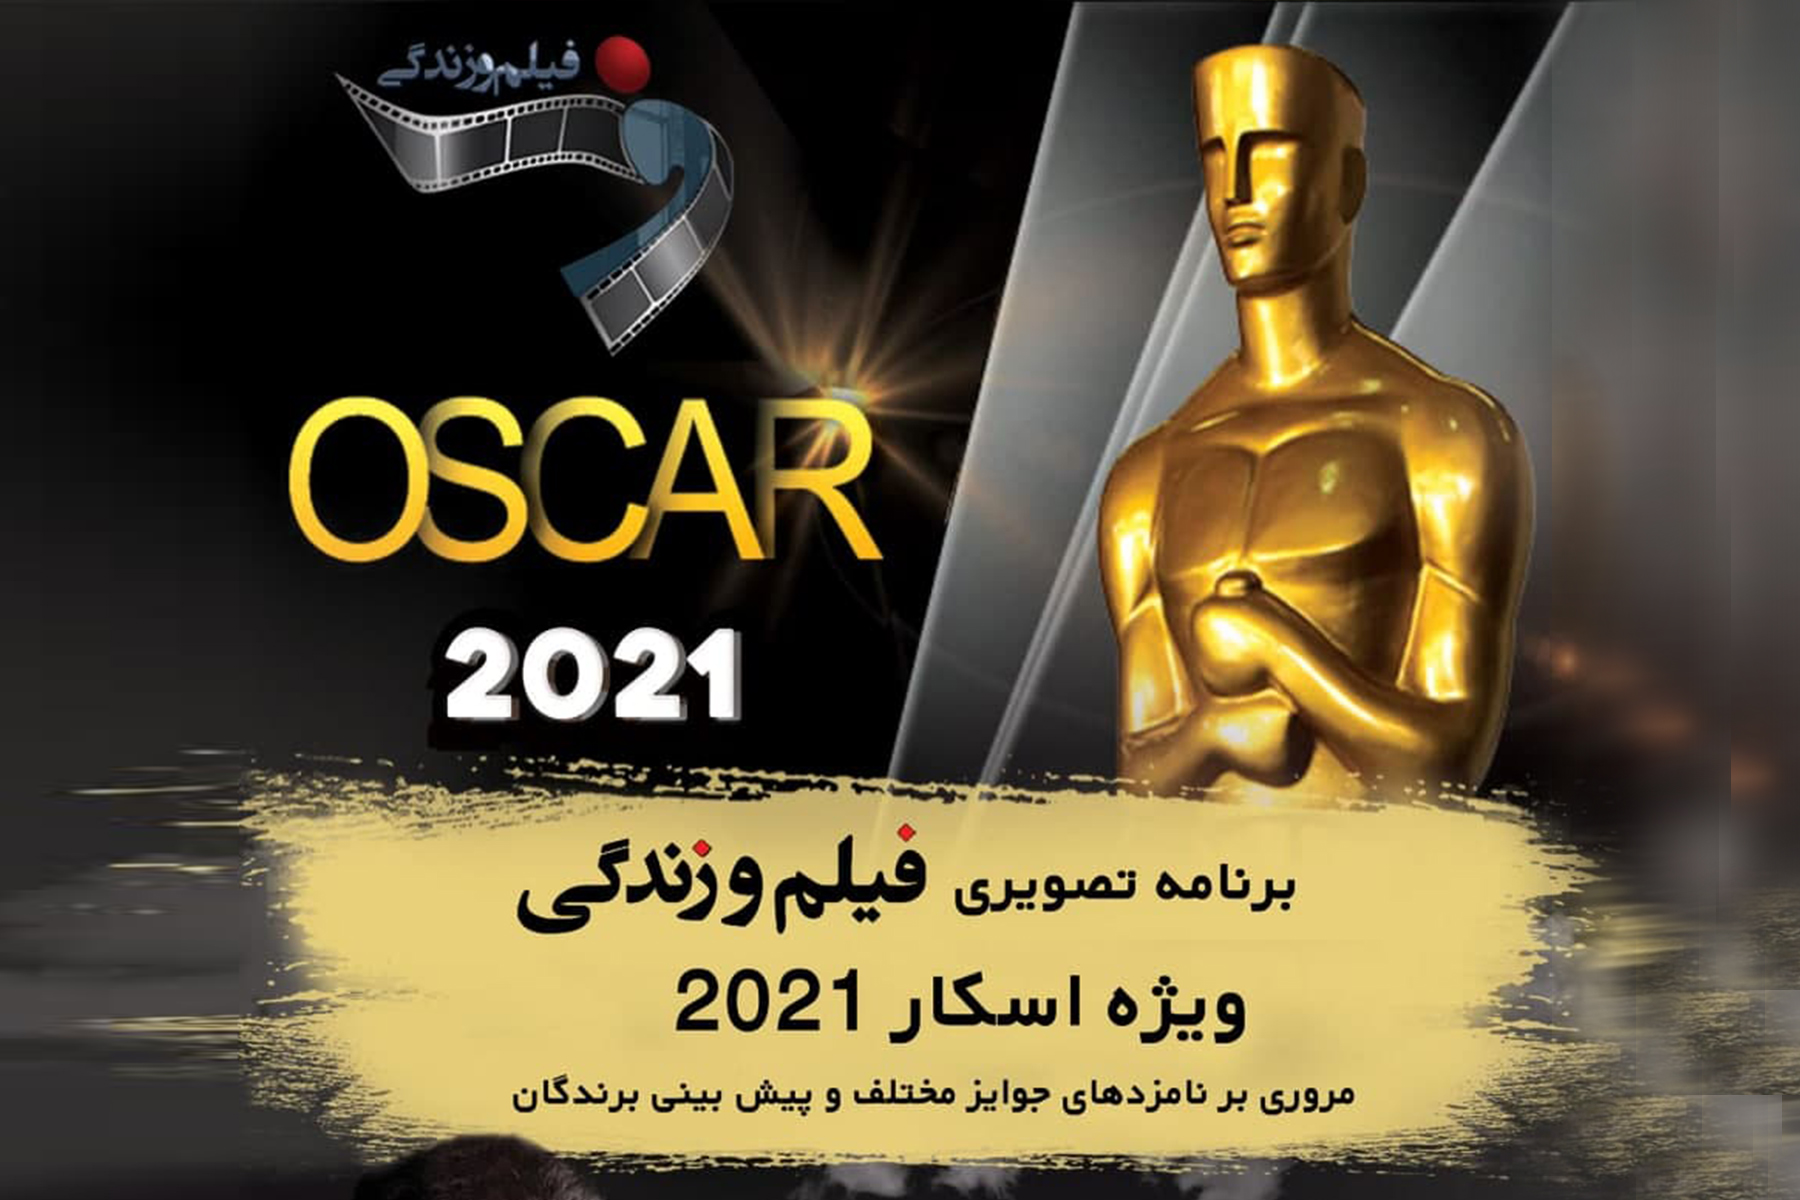 نود وسومین دوره مراسم جوایز آکادمی اسکار پنجشنبه ۲۵ آپریل برگزار خواهد شد